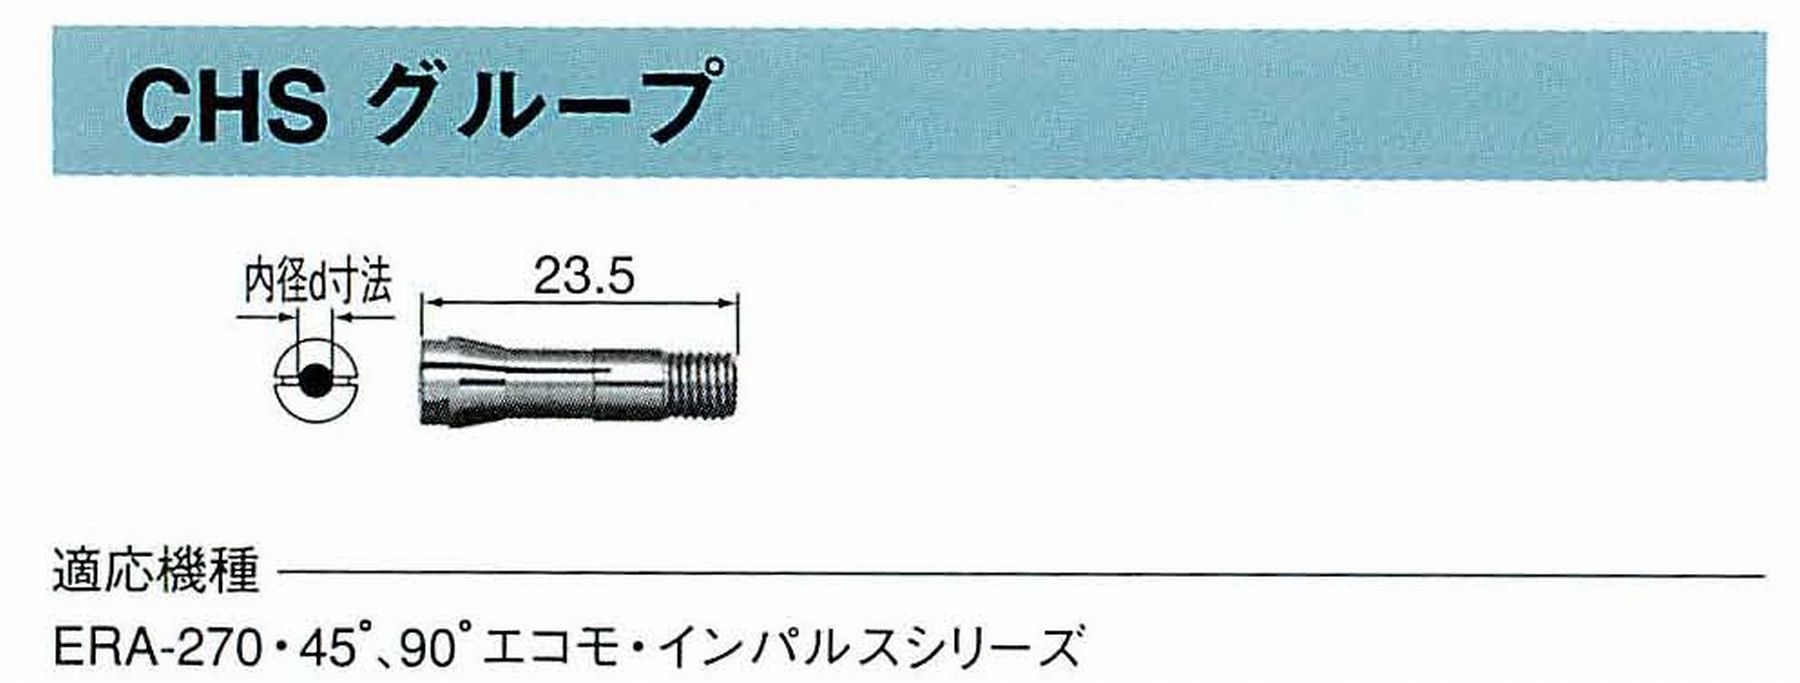 ナカニシ/NAKANISHI コレットチャック コード番号 90508 型式 CHS-0.8 内径:Φ0.8